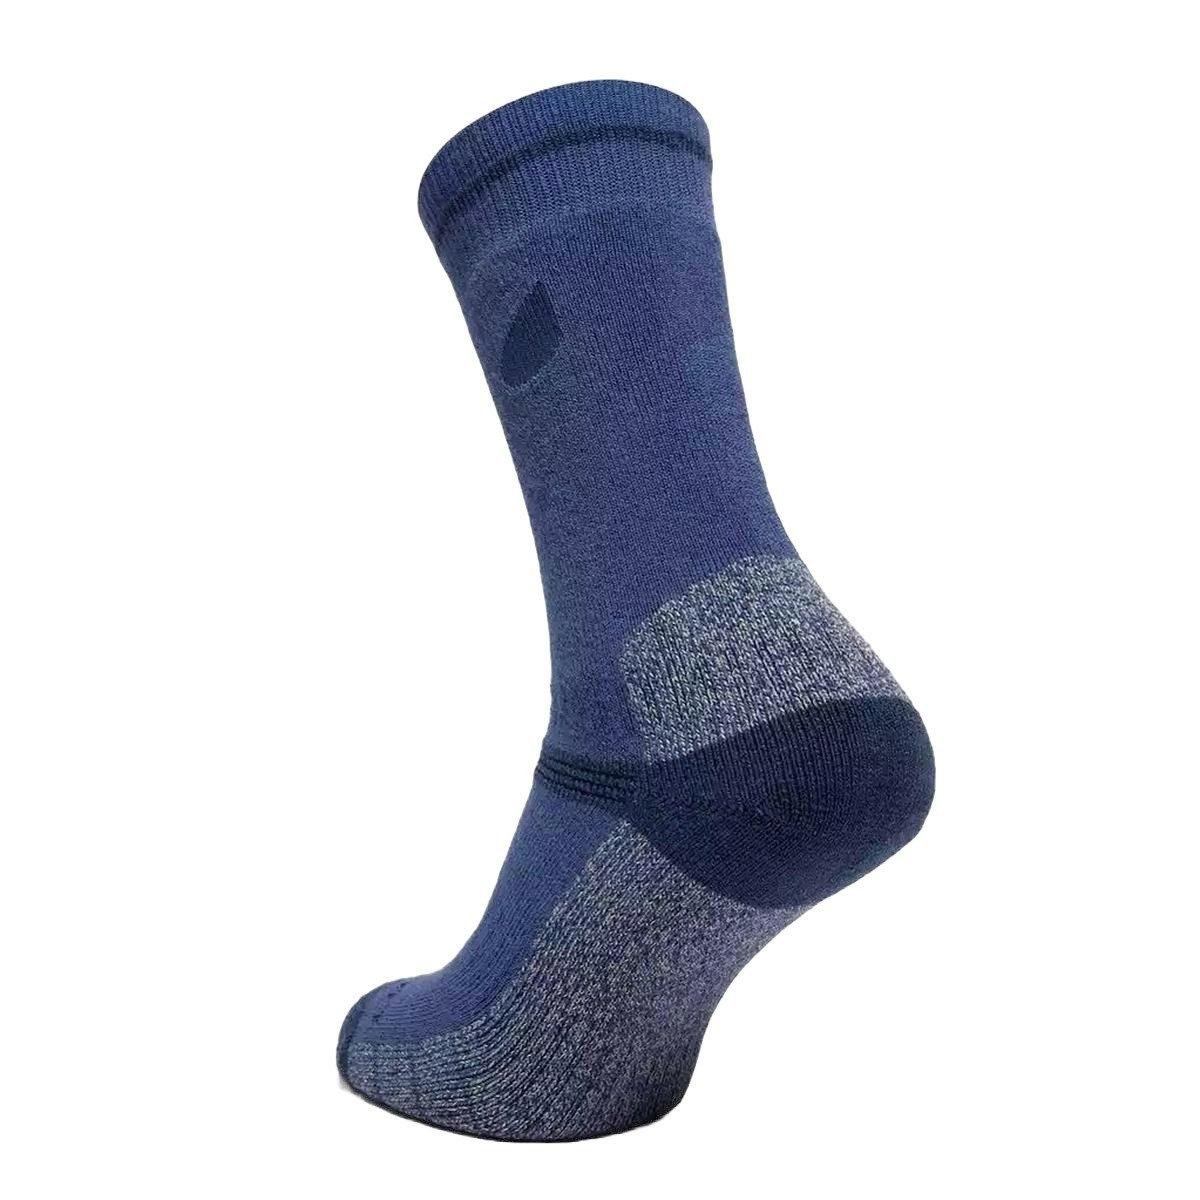 Peter Storm Women's Midweight Outdoor Socks 2 Pack - Blue